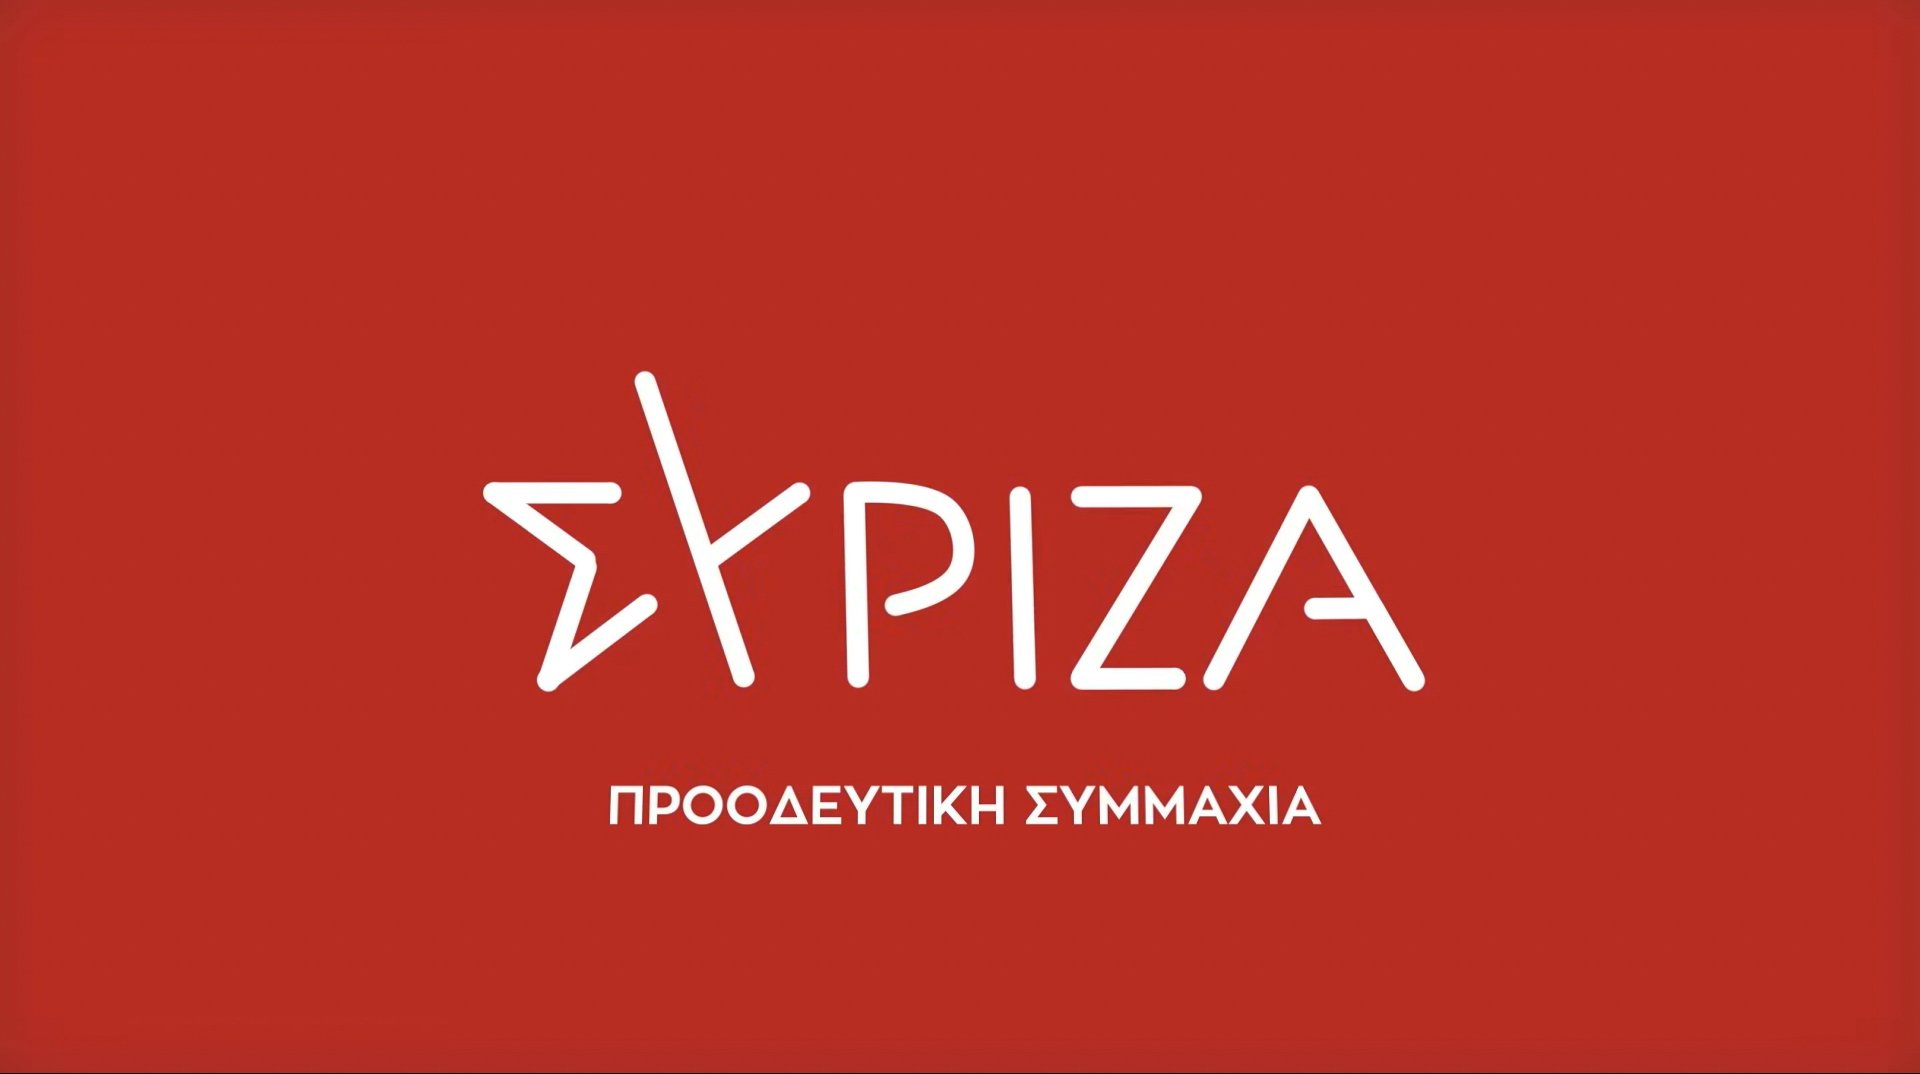 Στις 10 και 16 Σεπτεμβρίου η εκλογή Προέδρου στον ΣΥΡΙΖΑ